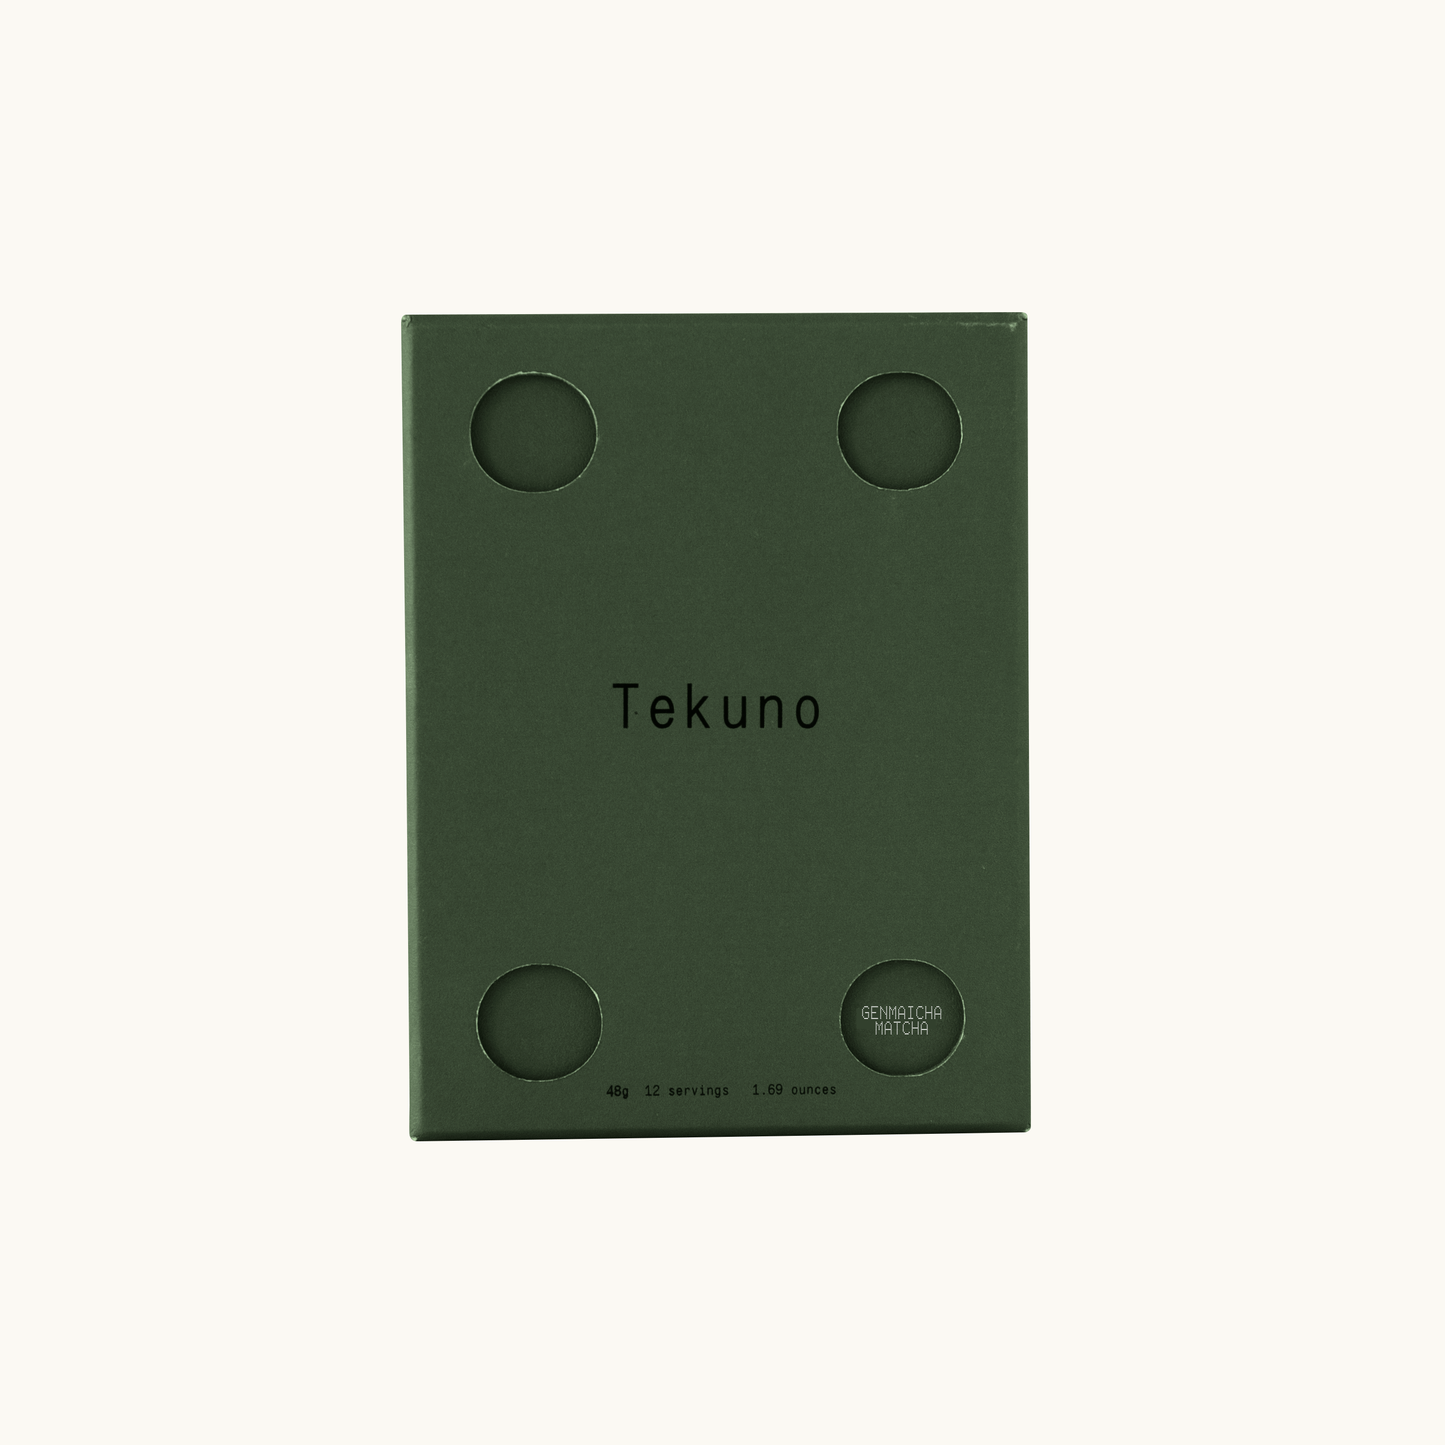 Tekuno - Genmaicha, Matcha Tea Sachets - Case of 10